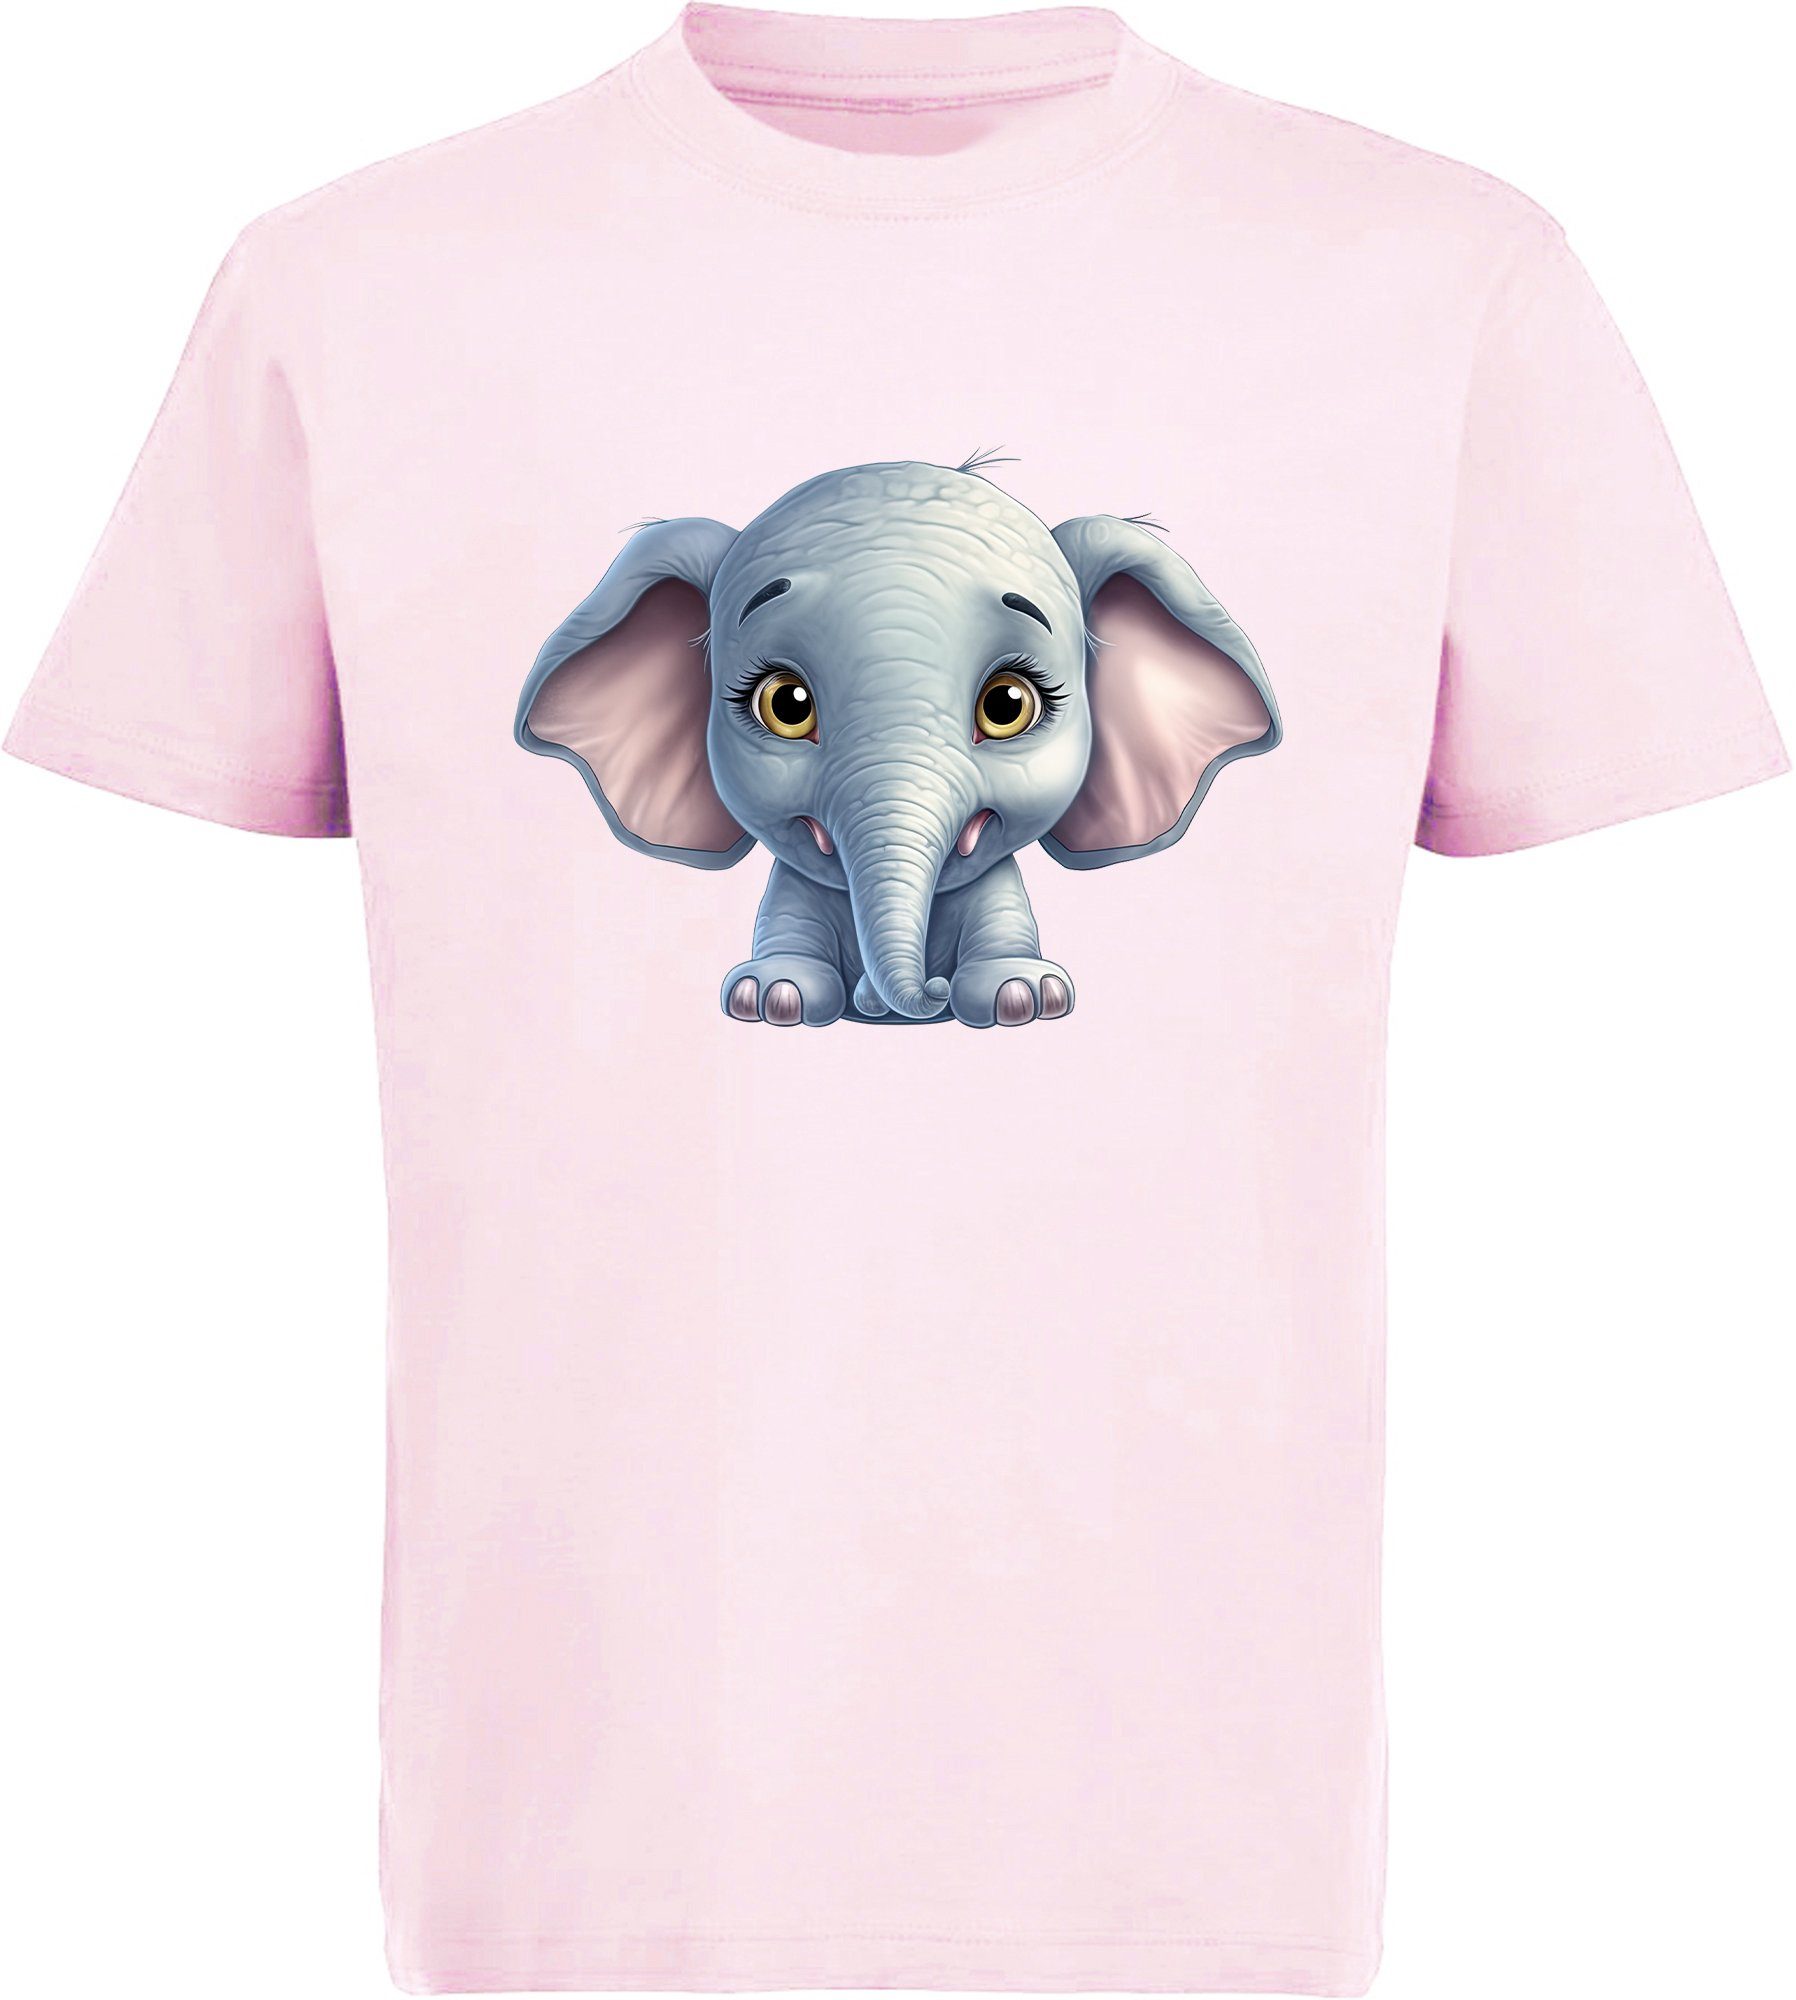 MyDesign24 T-Shirt Kinder Wildtier Print rosa i272 Shirt Baumwollshirt Elefant Aufdruck, Baby mit - bedruckt